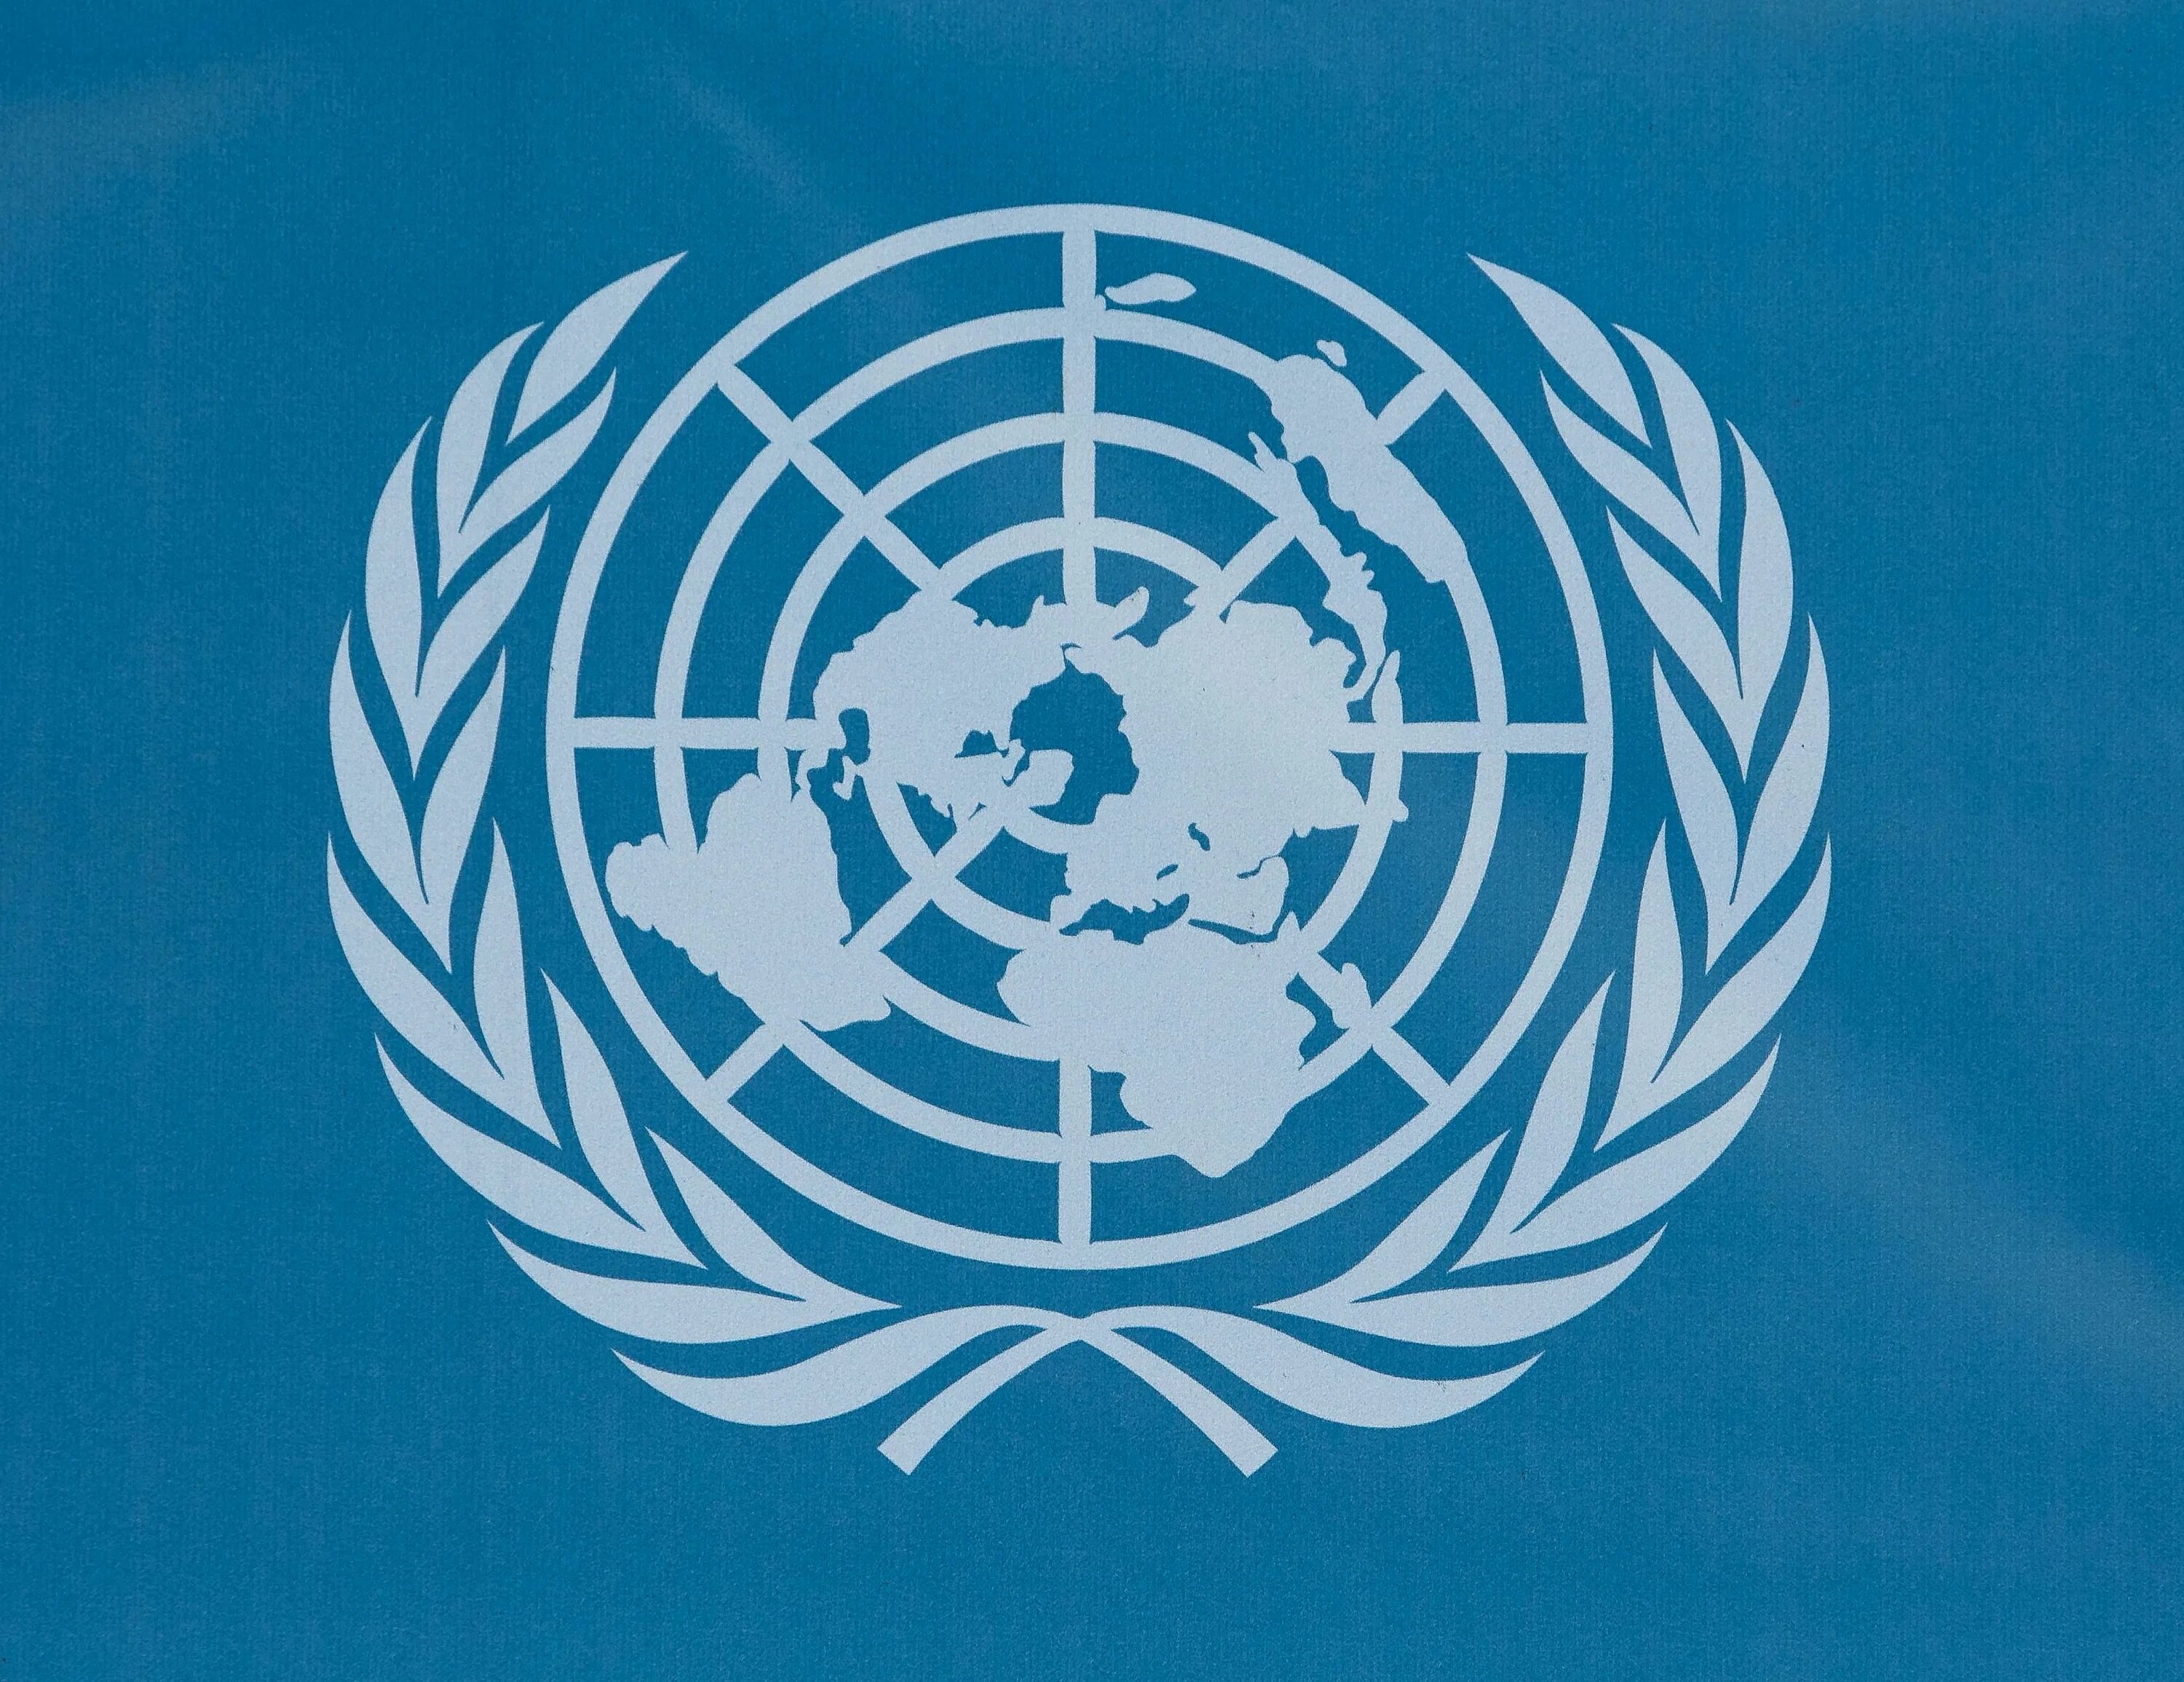 Конвенция о гс. Организация Объединенных наций (ООН). Международные организации ООН. Oont. Организация Объединенных наций эмблема.